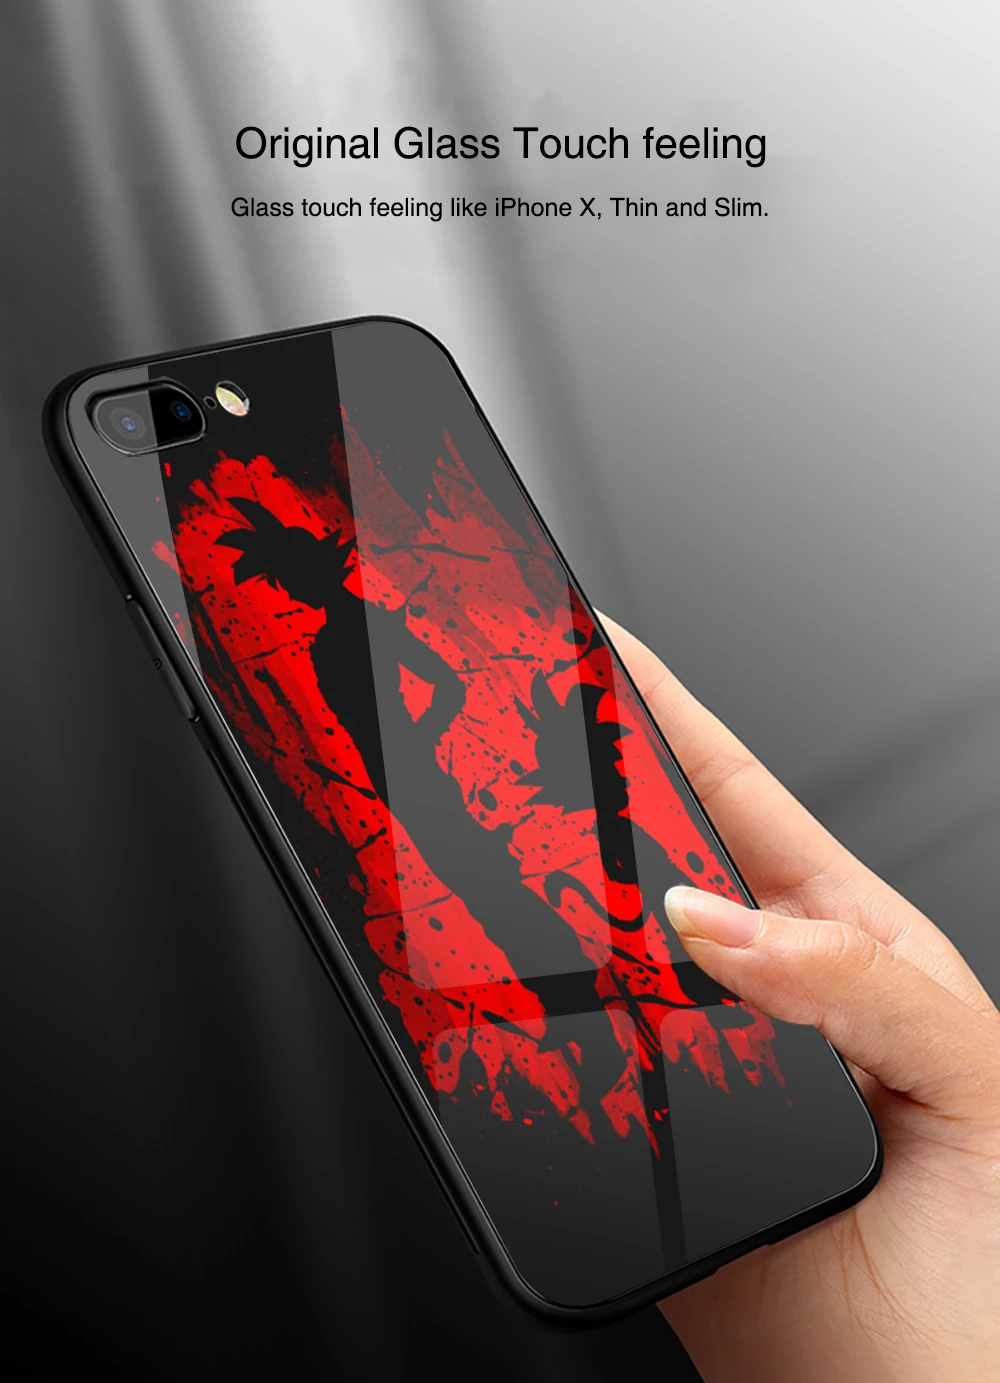 Finder чехол для iphone Xs чехол Dragon Ball Z Сон Гоку Стекло задняя крышка чехол для iphone 6, 6 S, 7, 8 plus X XR XS MAX 11 pro max